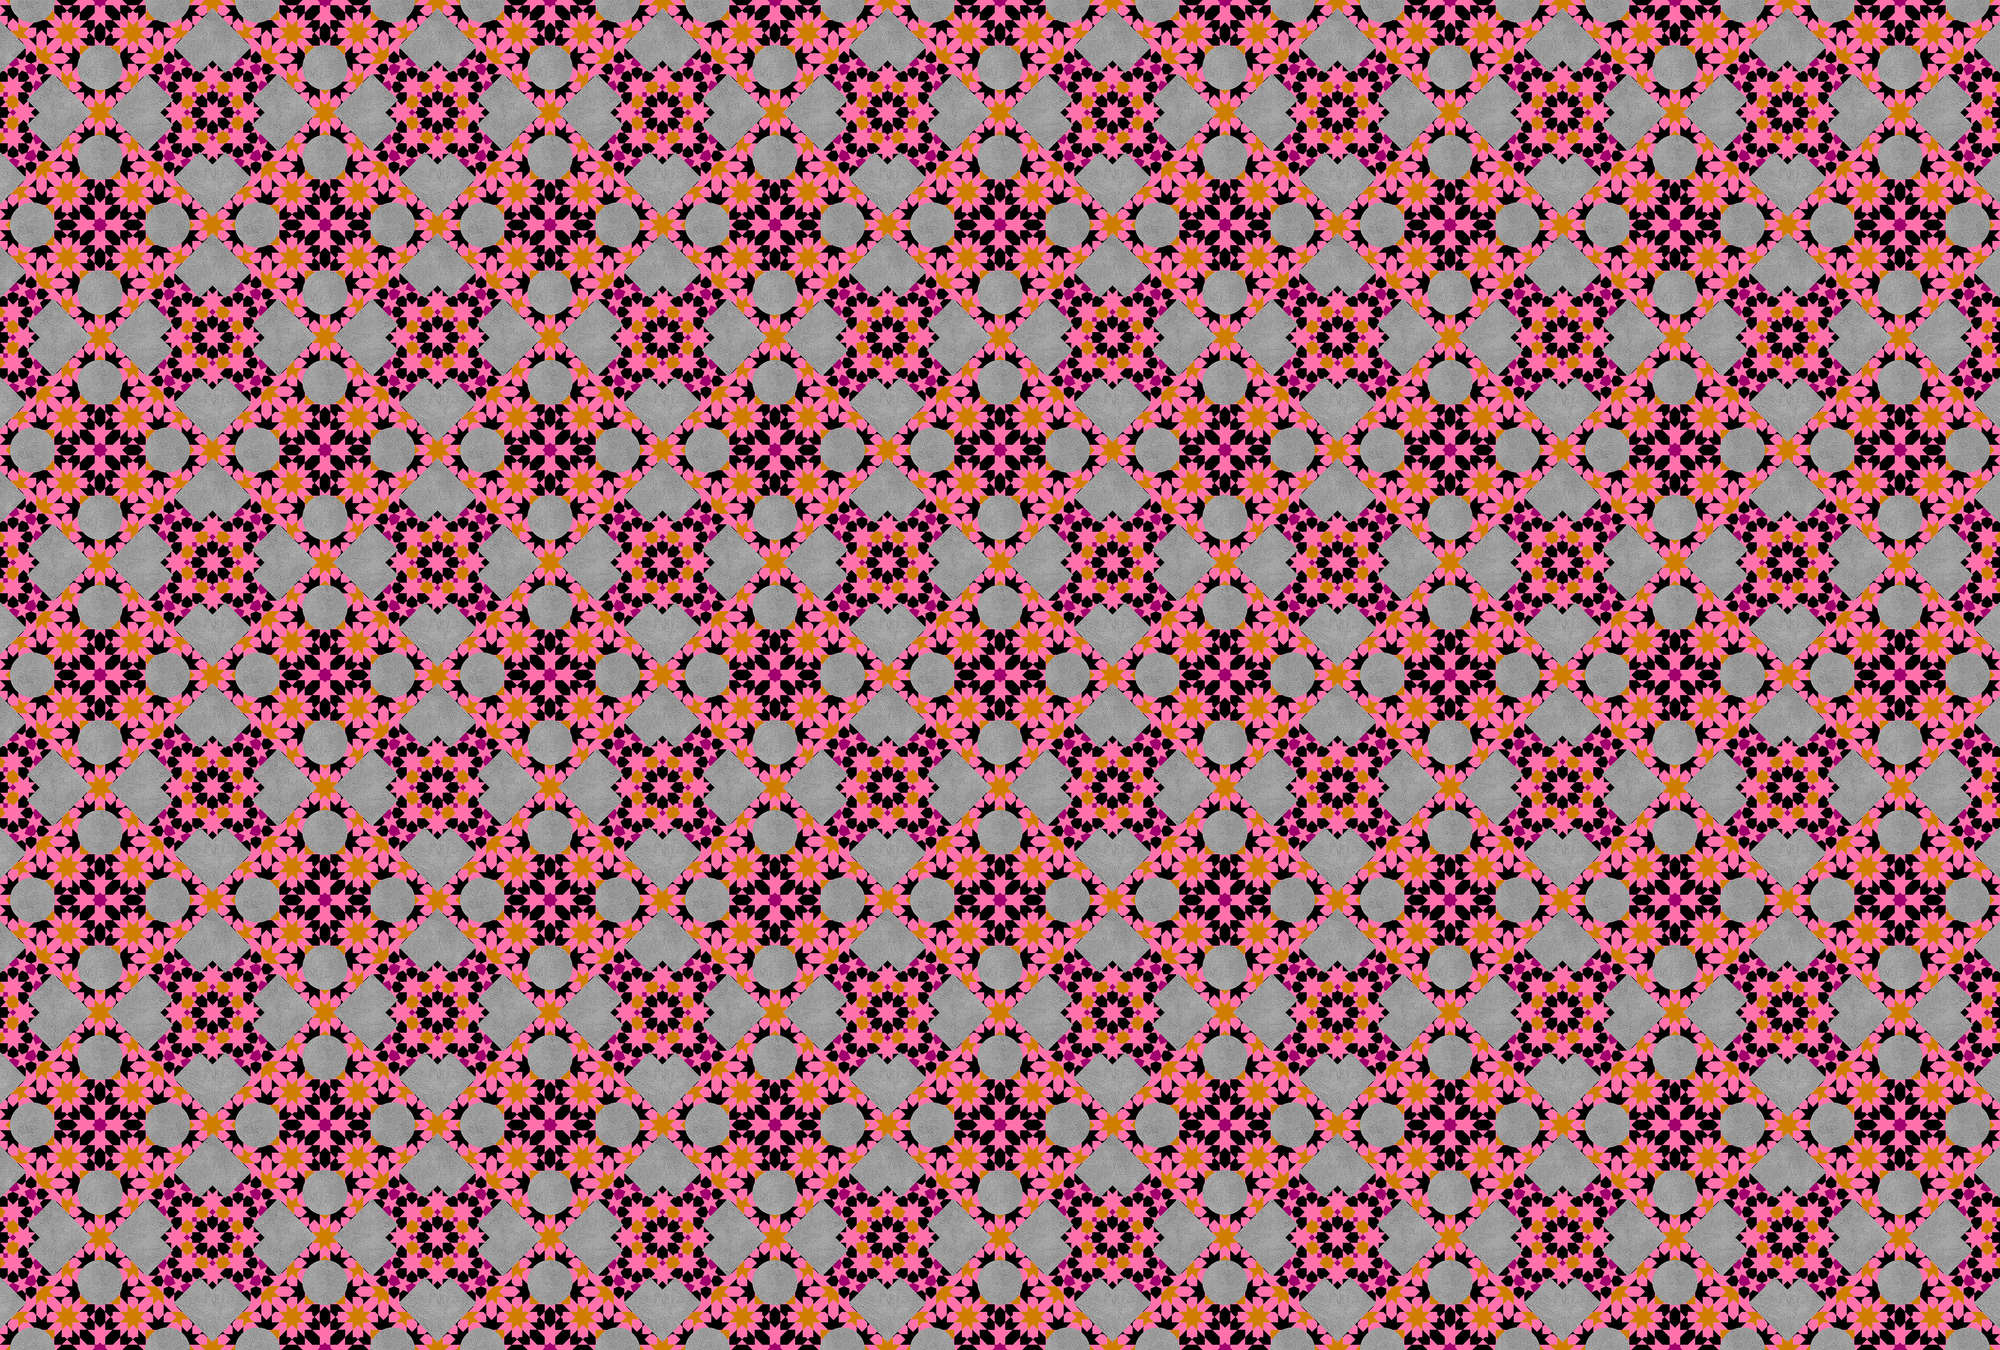             Abstract Grafisch Mozaïek Behang - Oranje, Roze
        